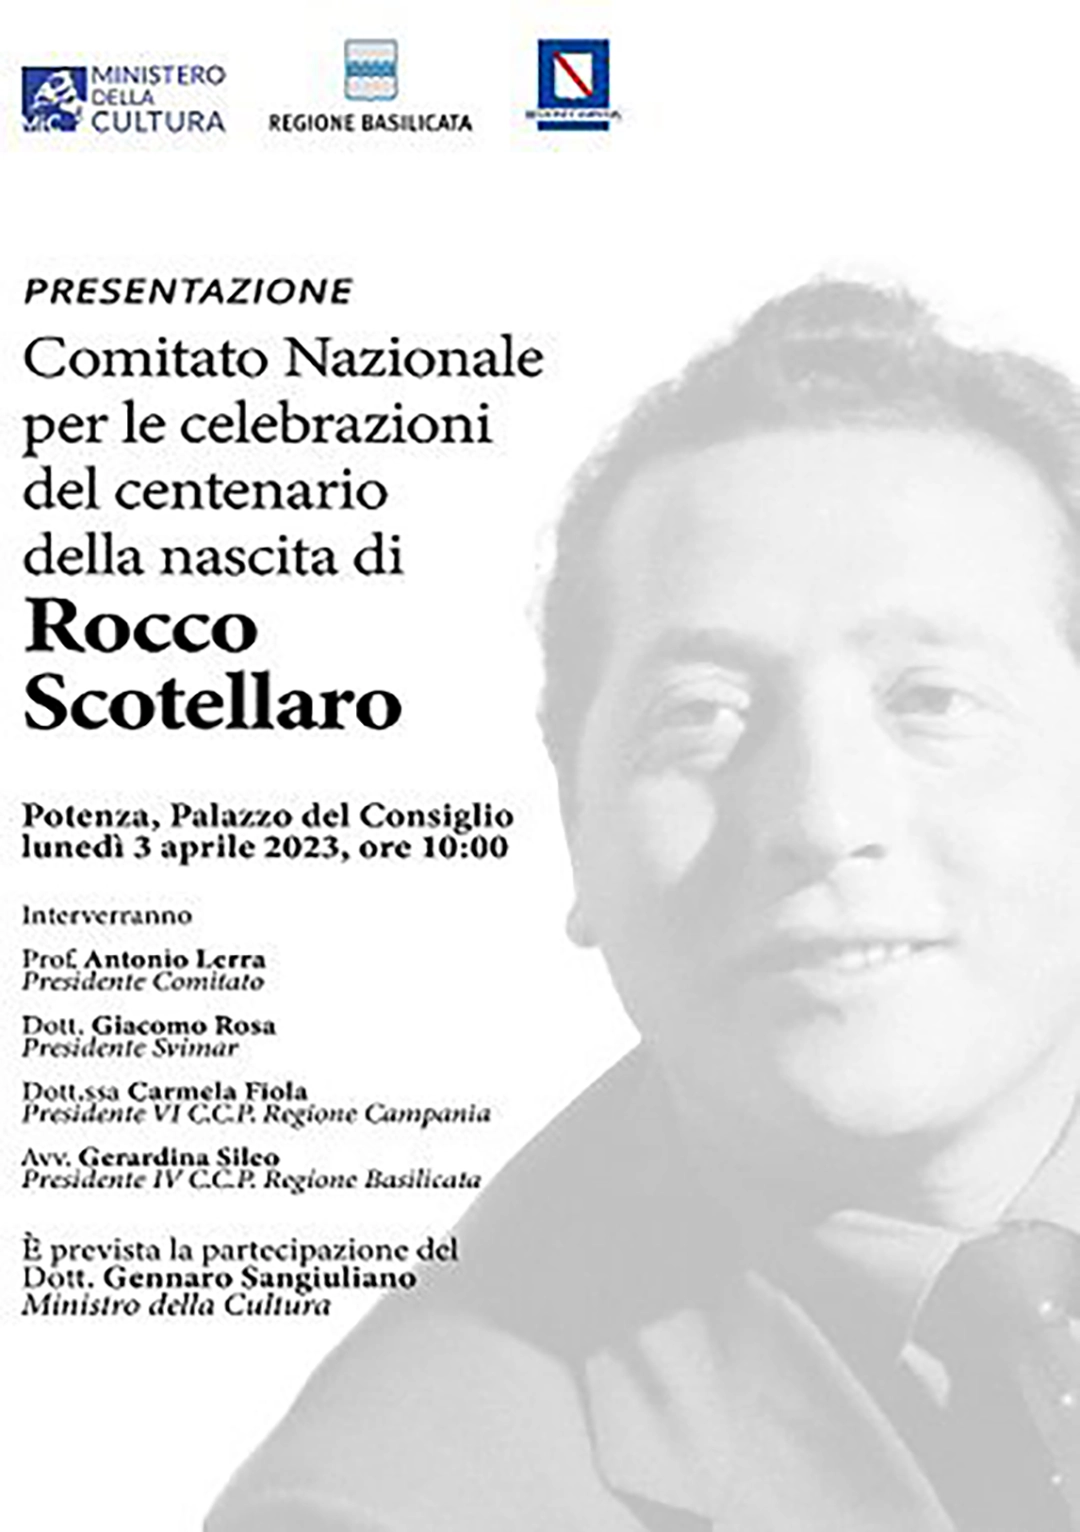 Presentazione Comitato Nazionale per le Celebrazioni del centenario della nascita di Rocco Scotellaro